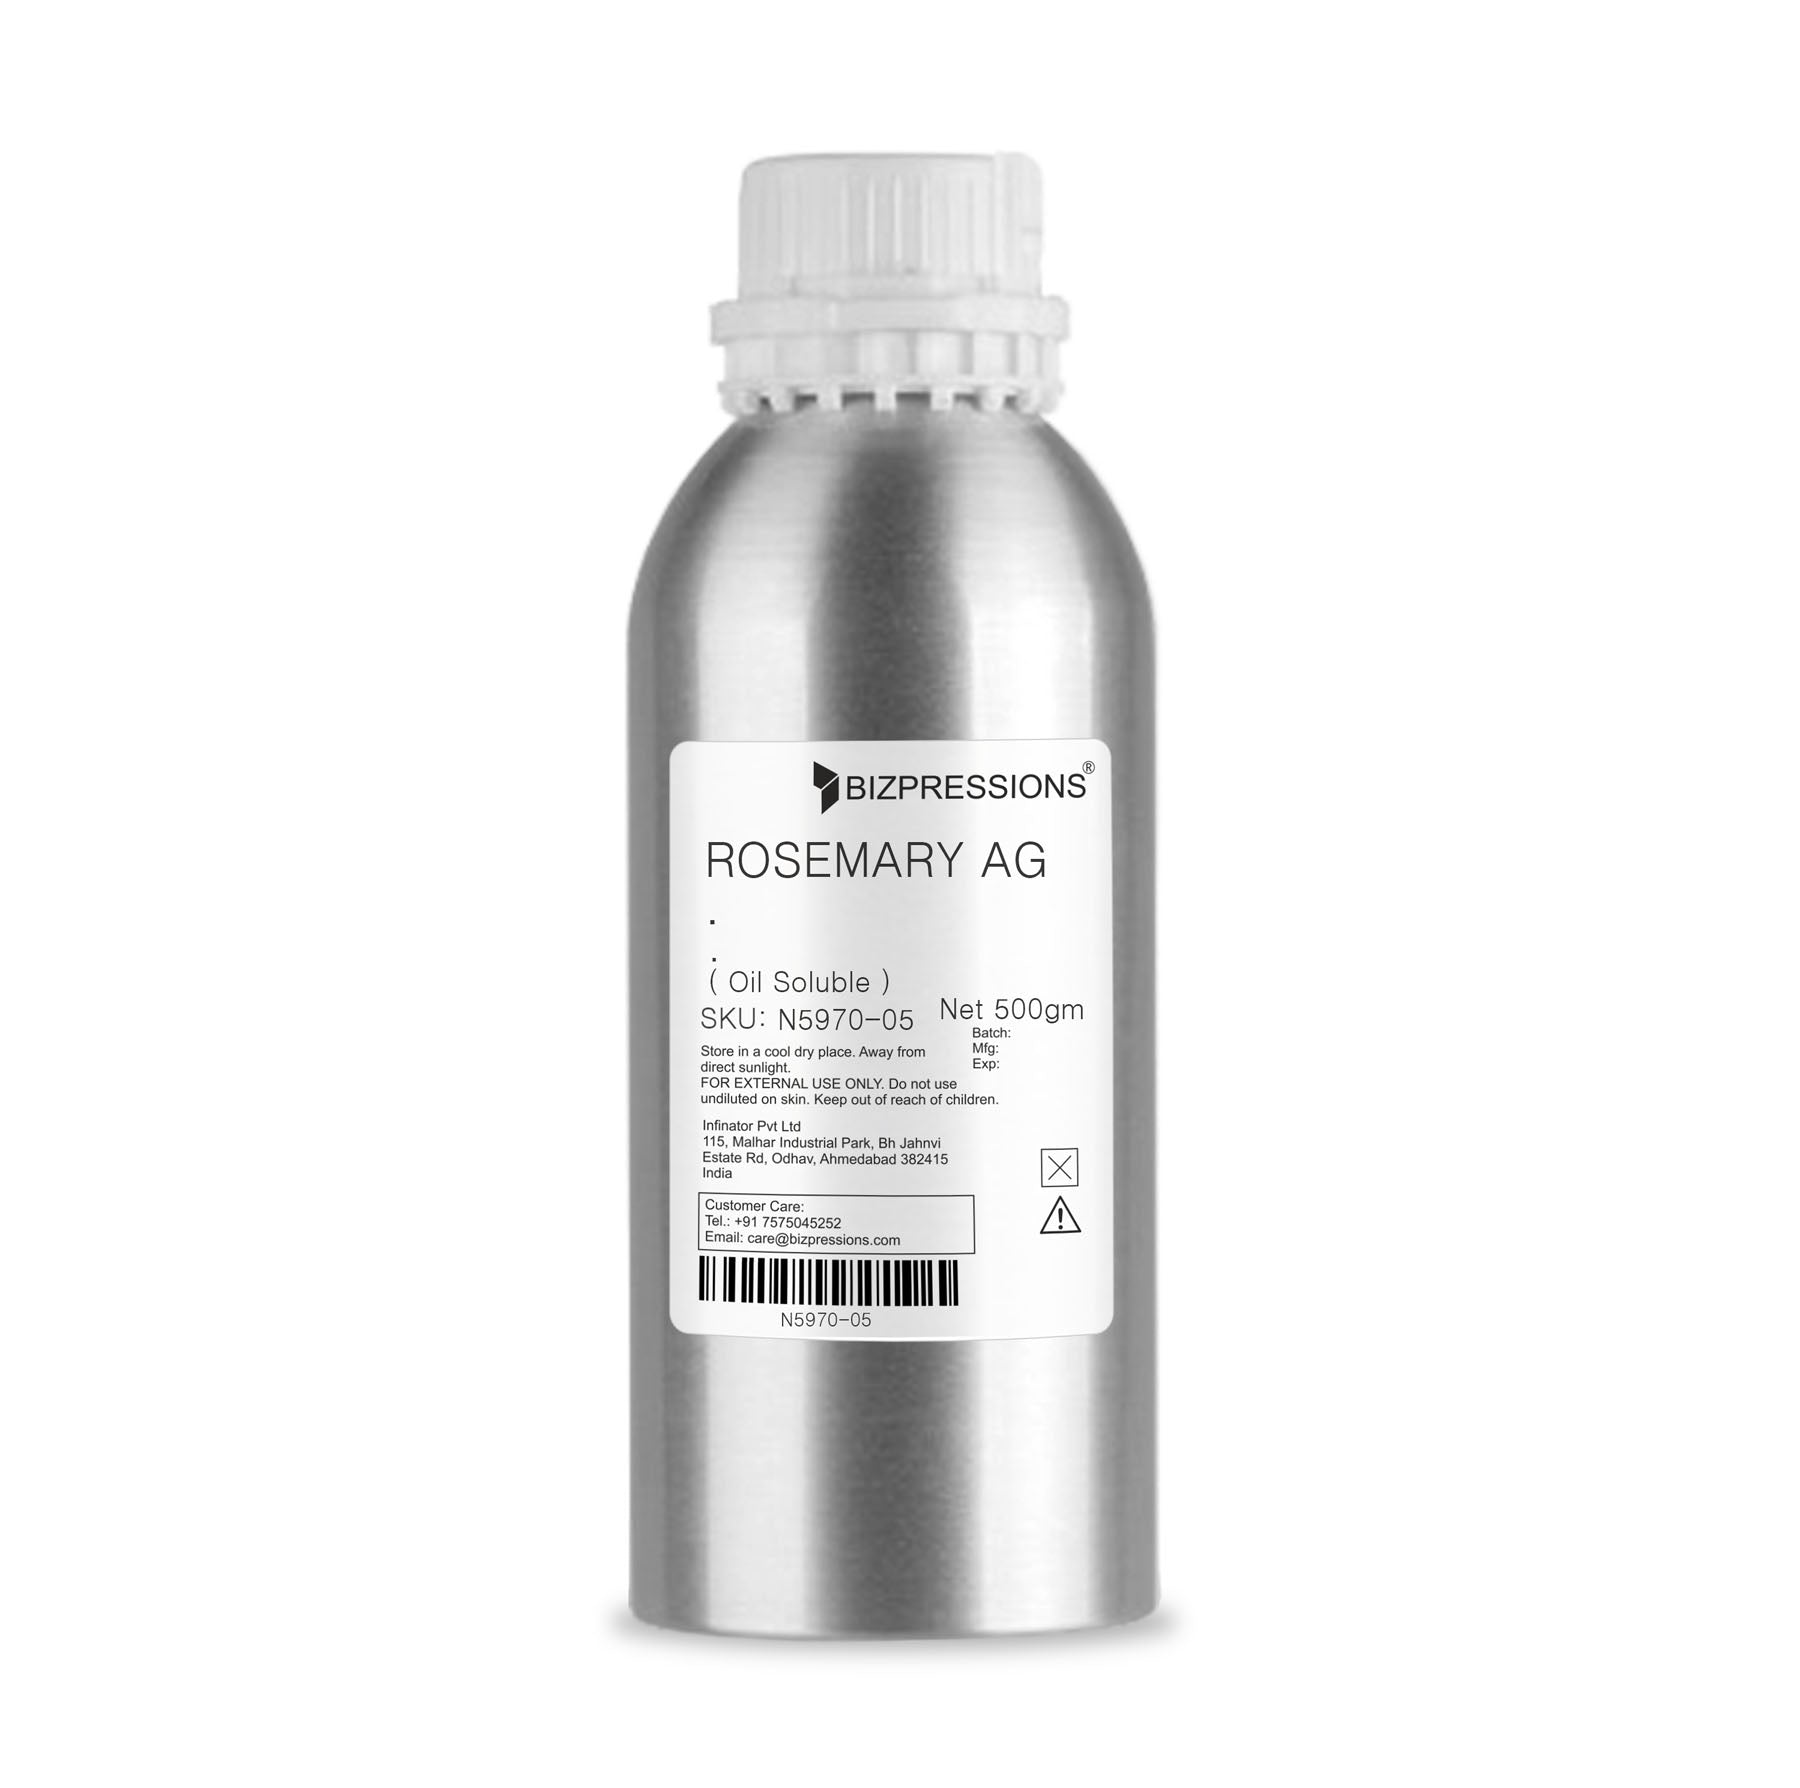 ROSEMARY AG - Fragrance ( Oil Soluble ) - 500 gm